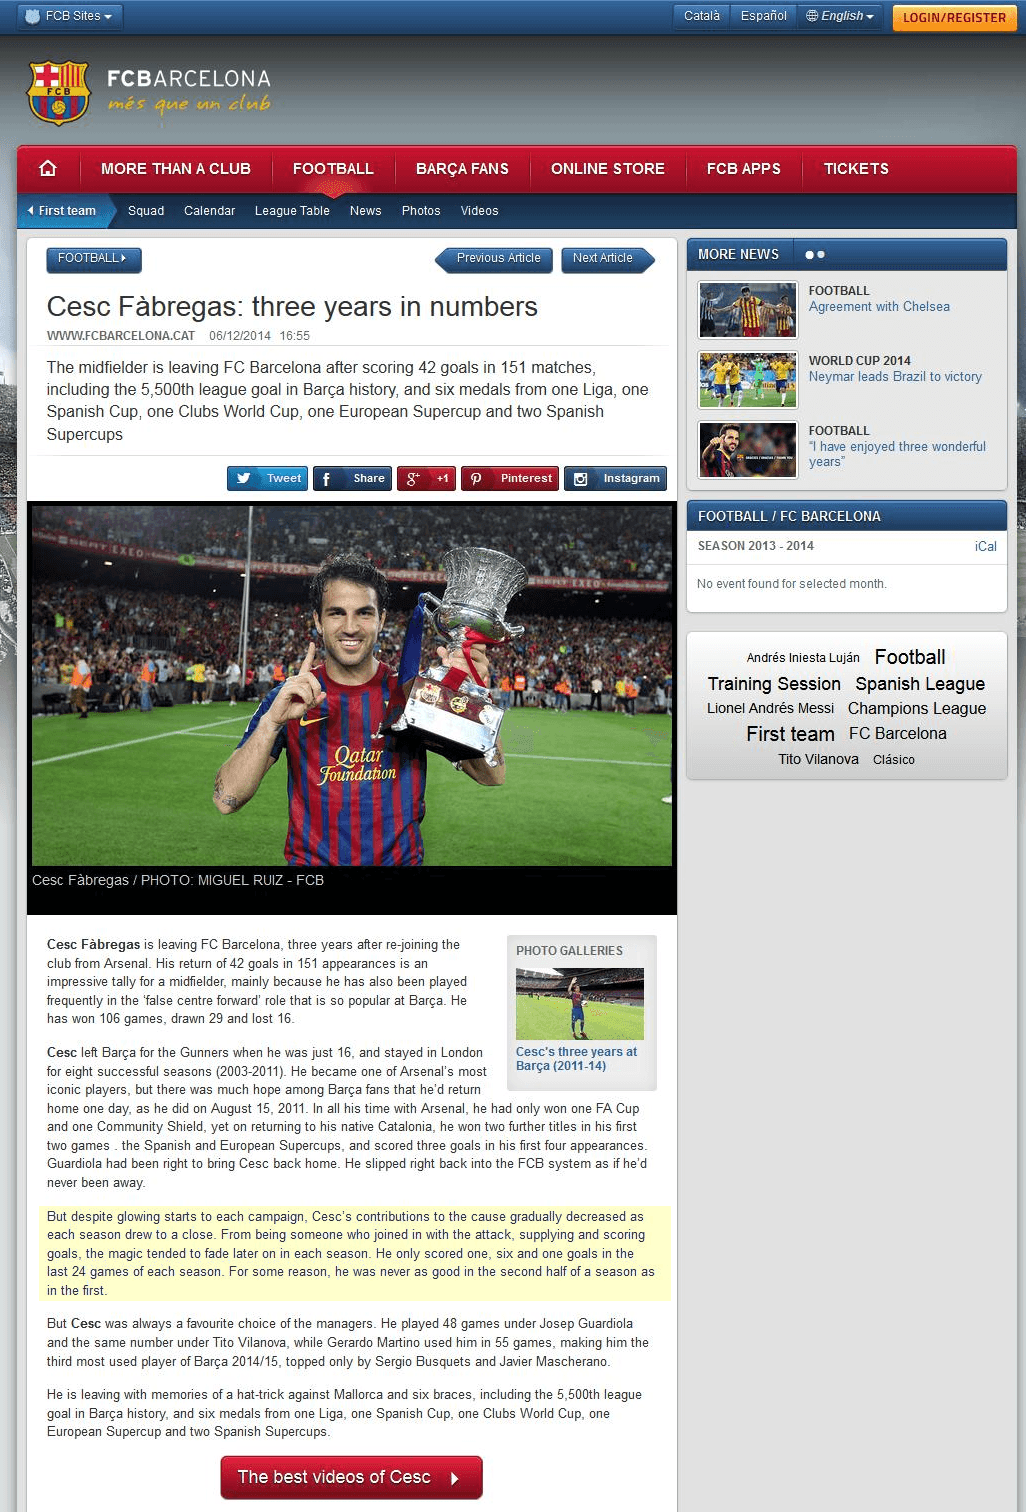 Barcelona verabschiedet Cesc Fabregas